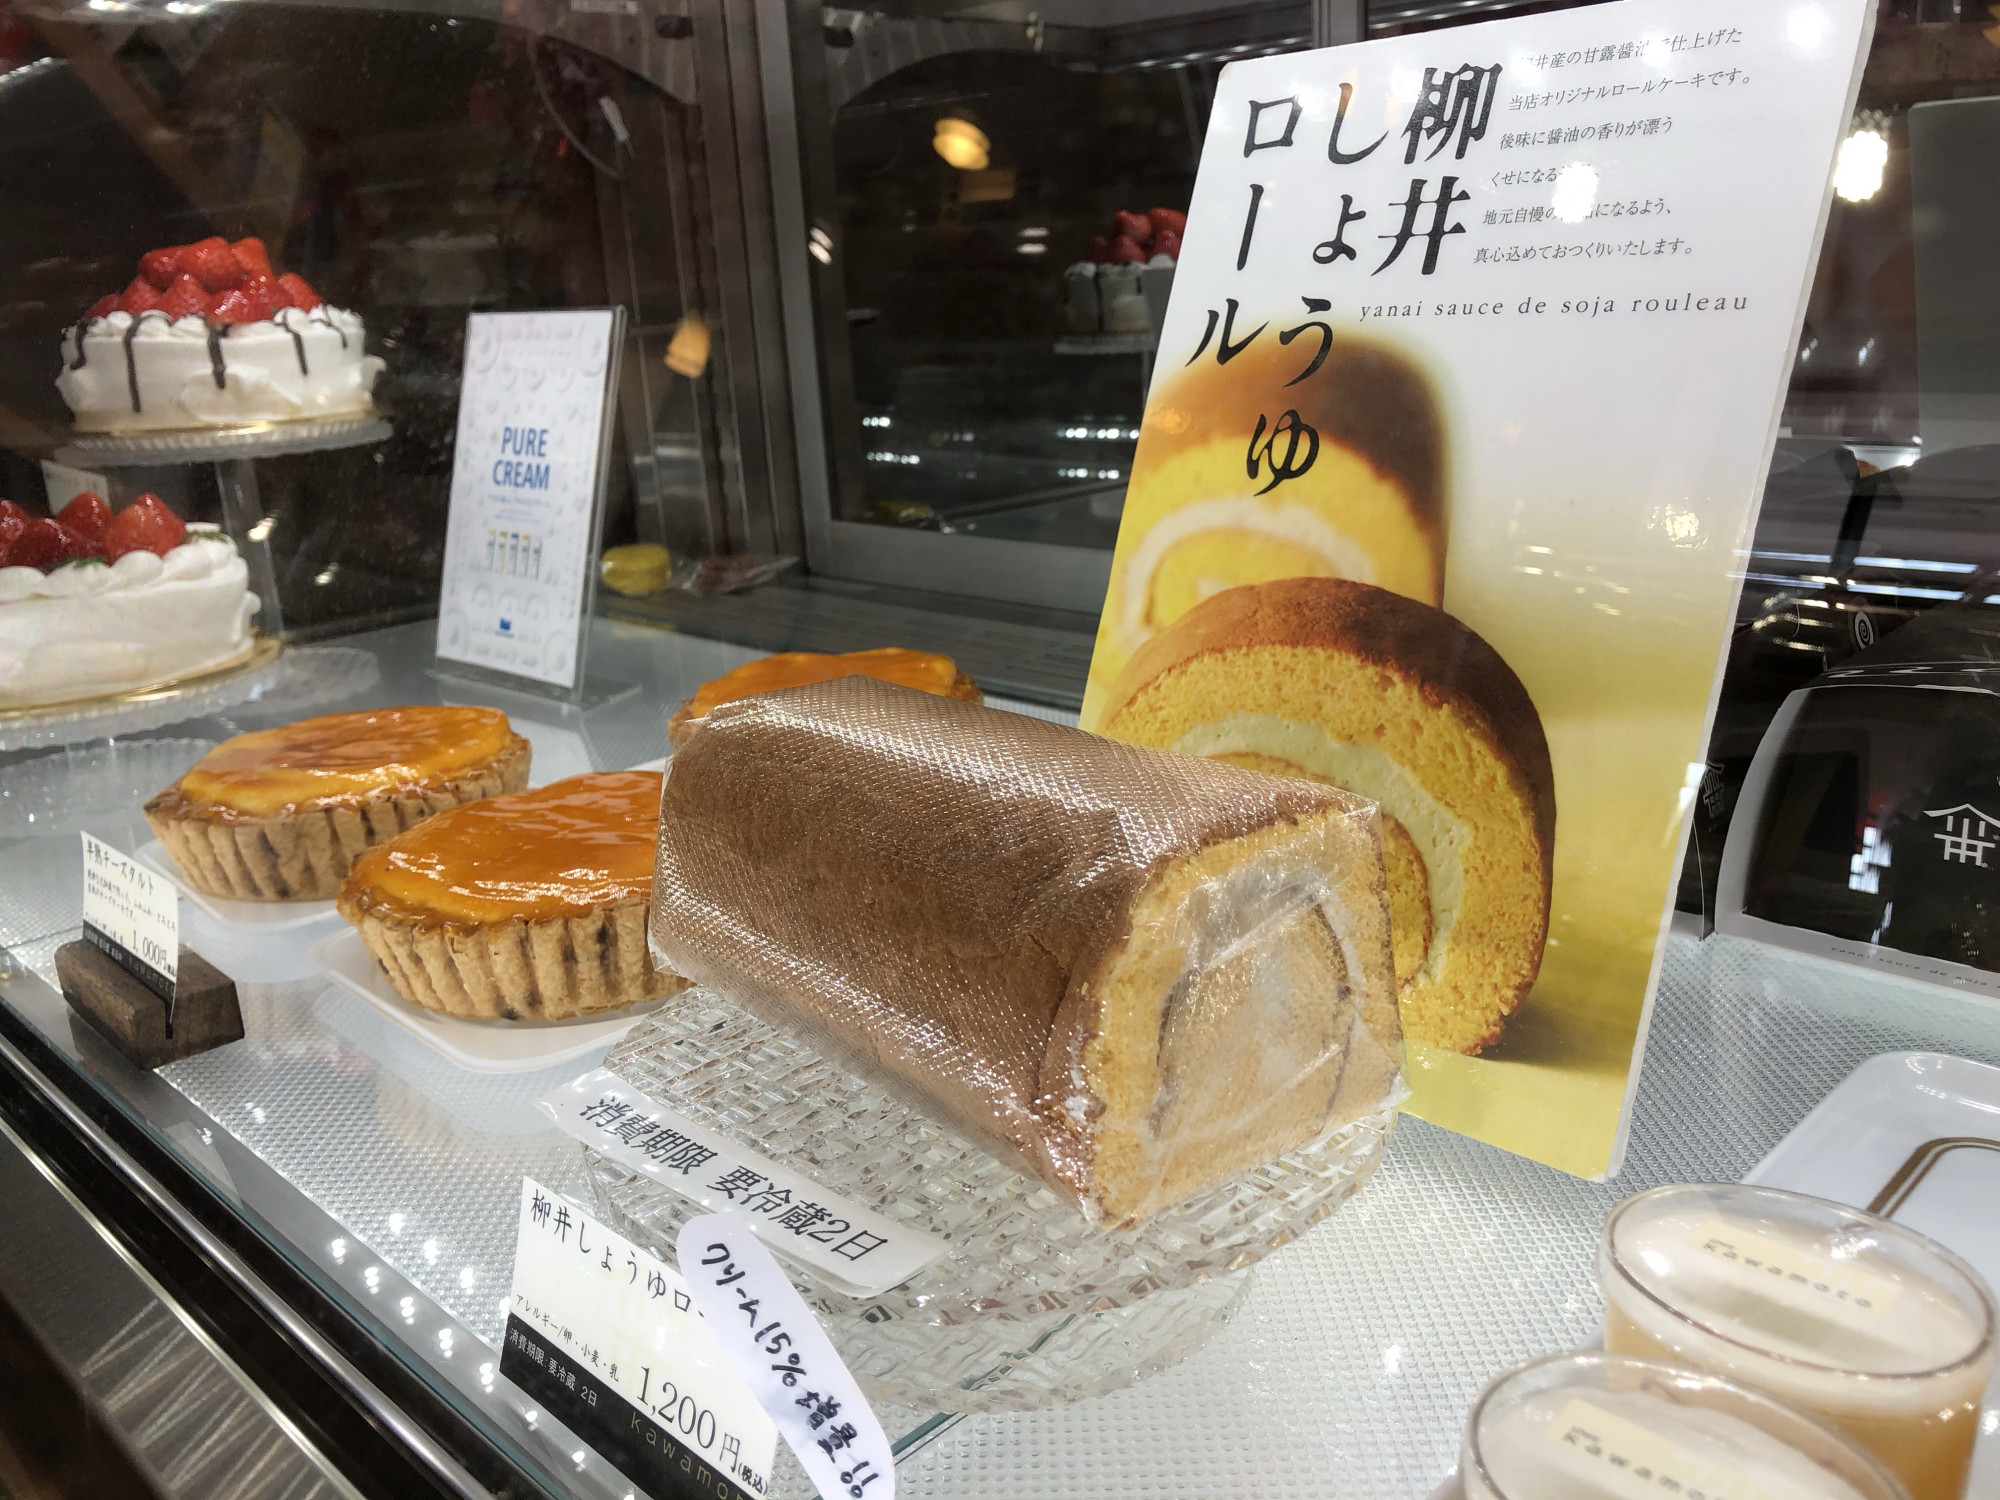 柳井市の特産品 甘露醤油を使用したスイーツ シェ カワモト オススメは しょうゆロール